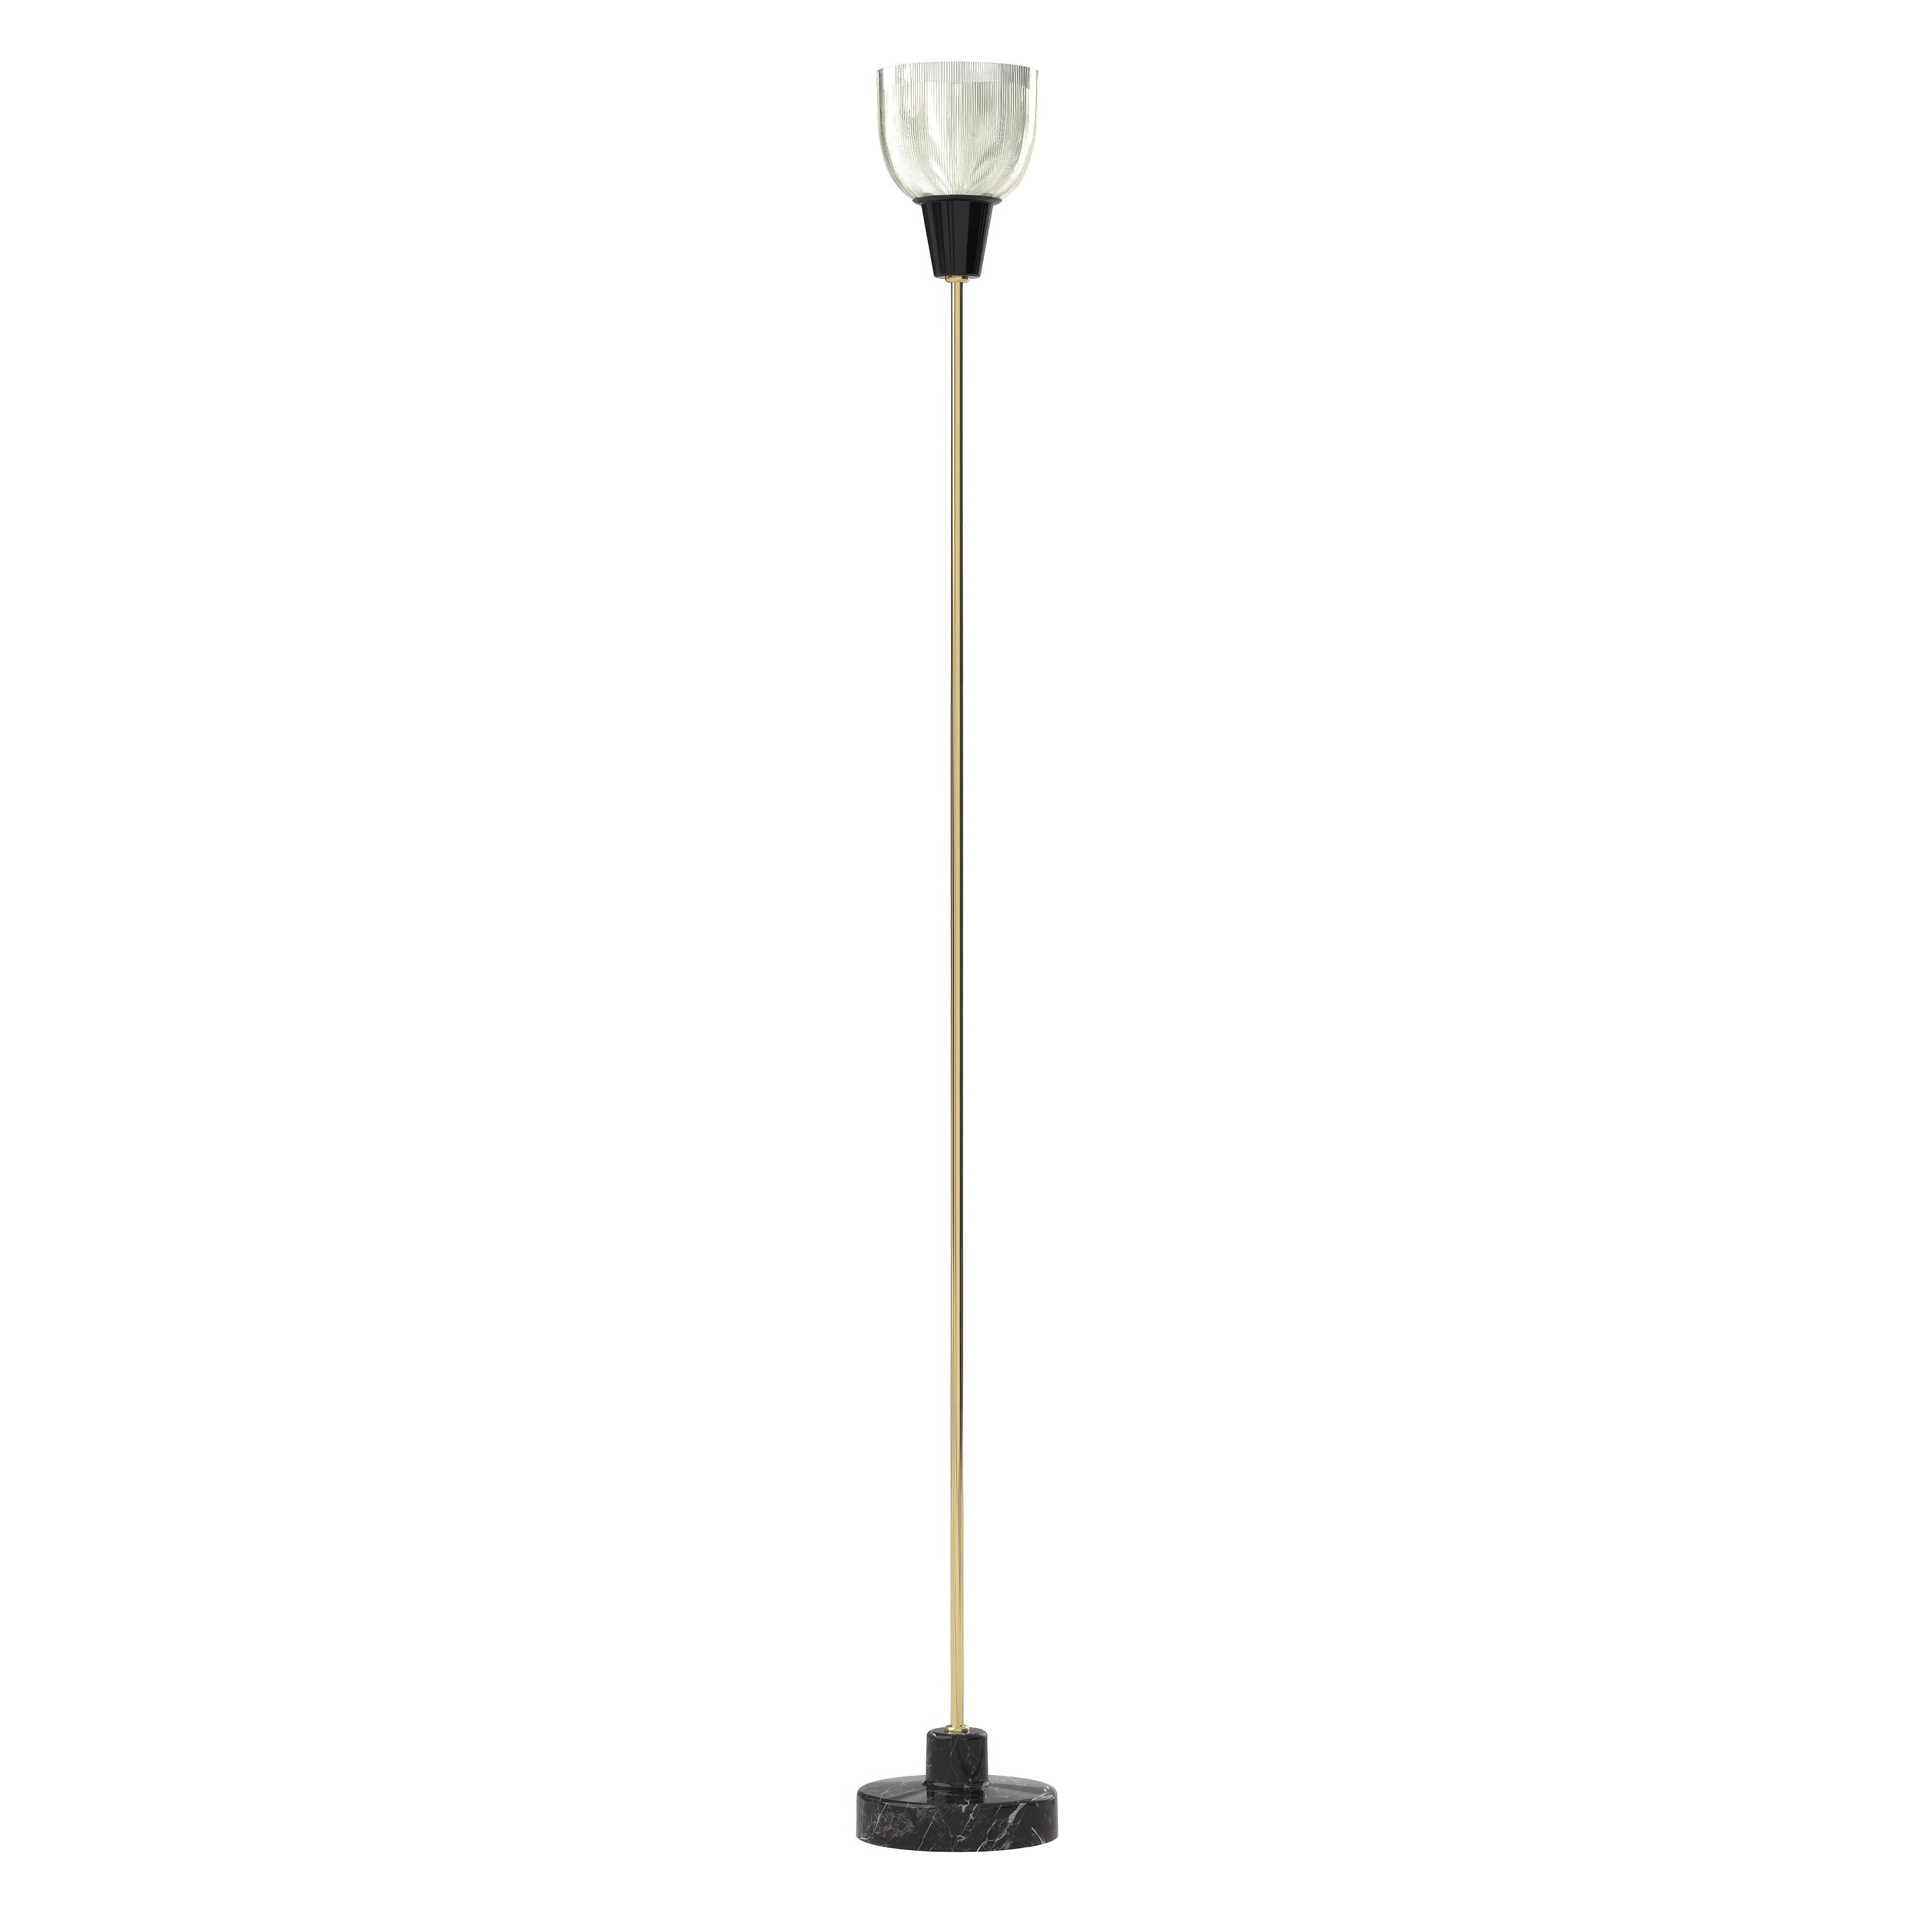 Contemporary Ignazio Gardella 'Coppa Aperta Piantana' Floor Lamp in Black Marble and Brass For Sale